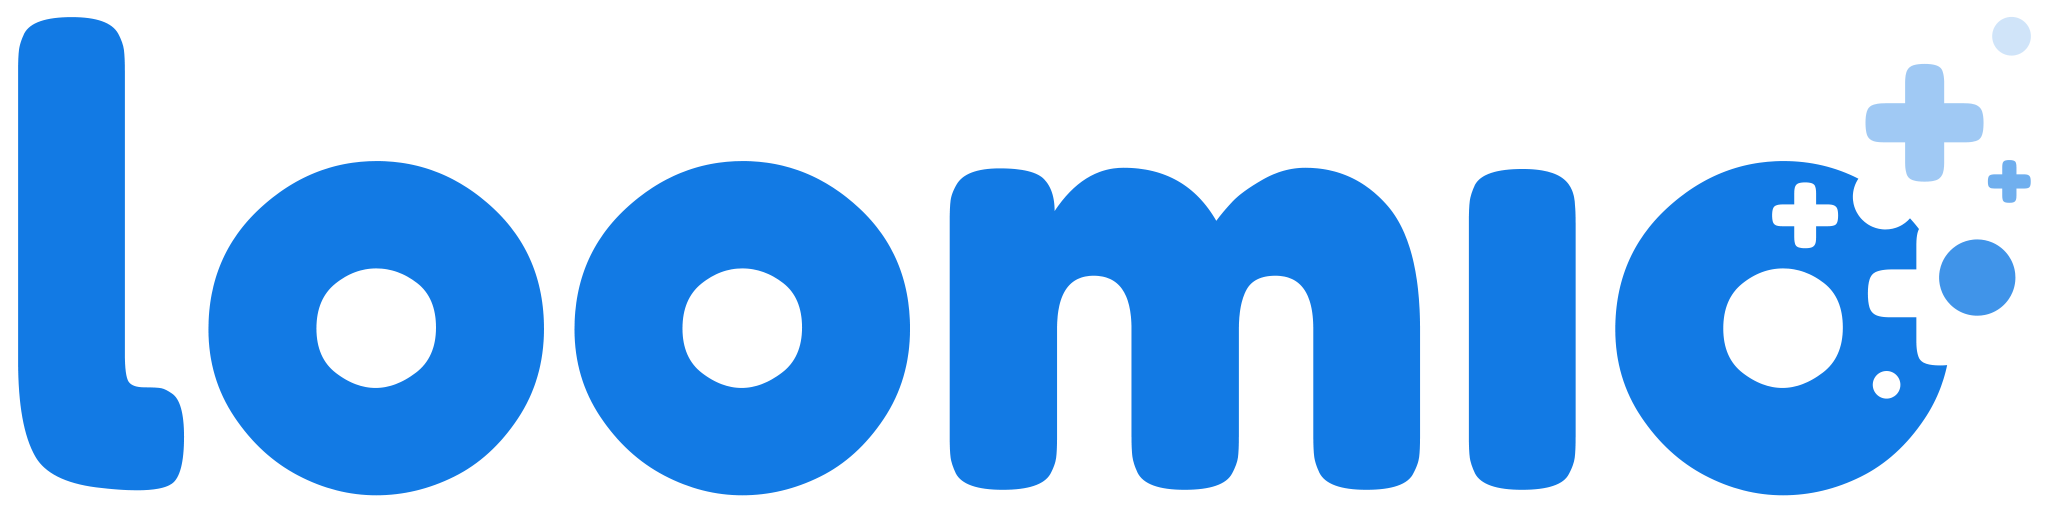 Loomio Logo